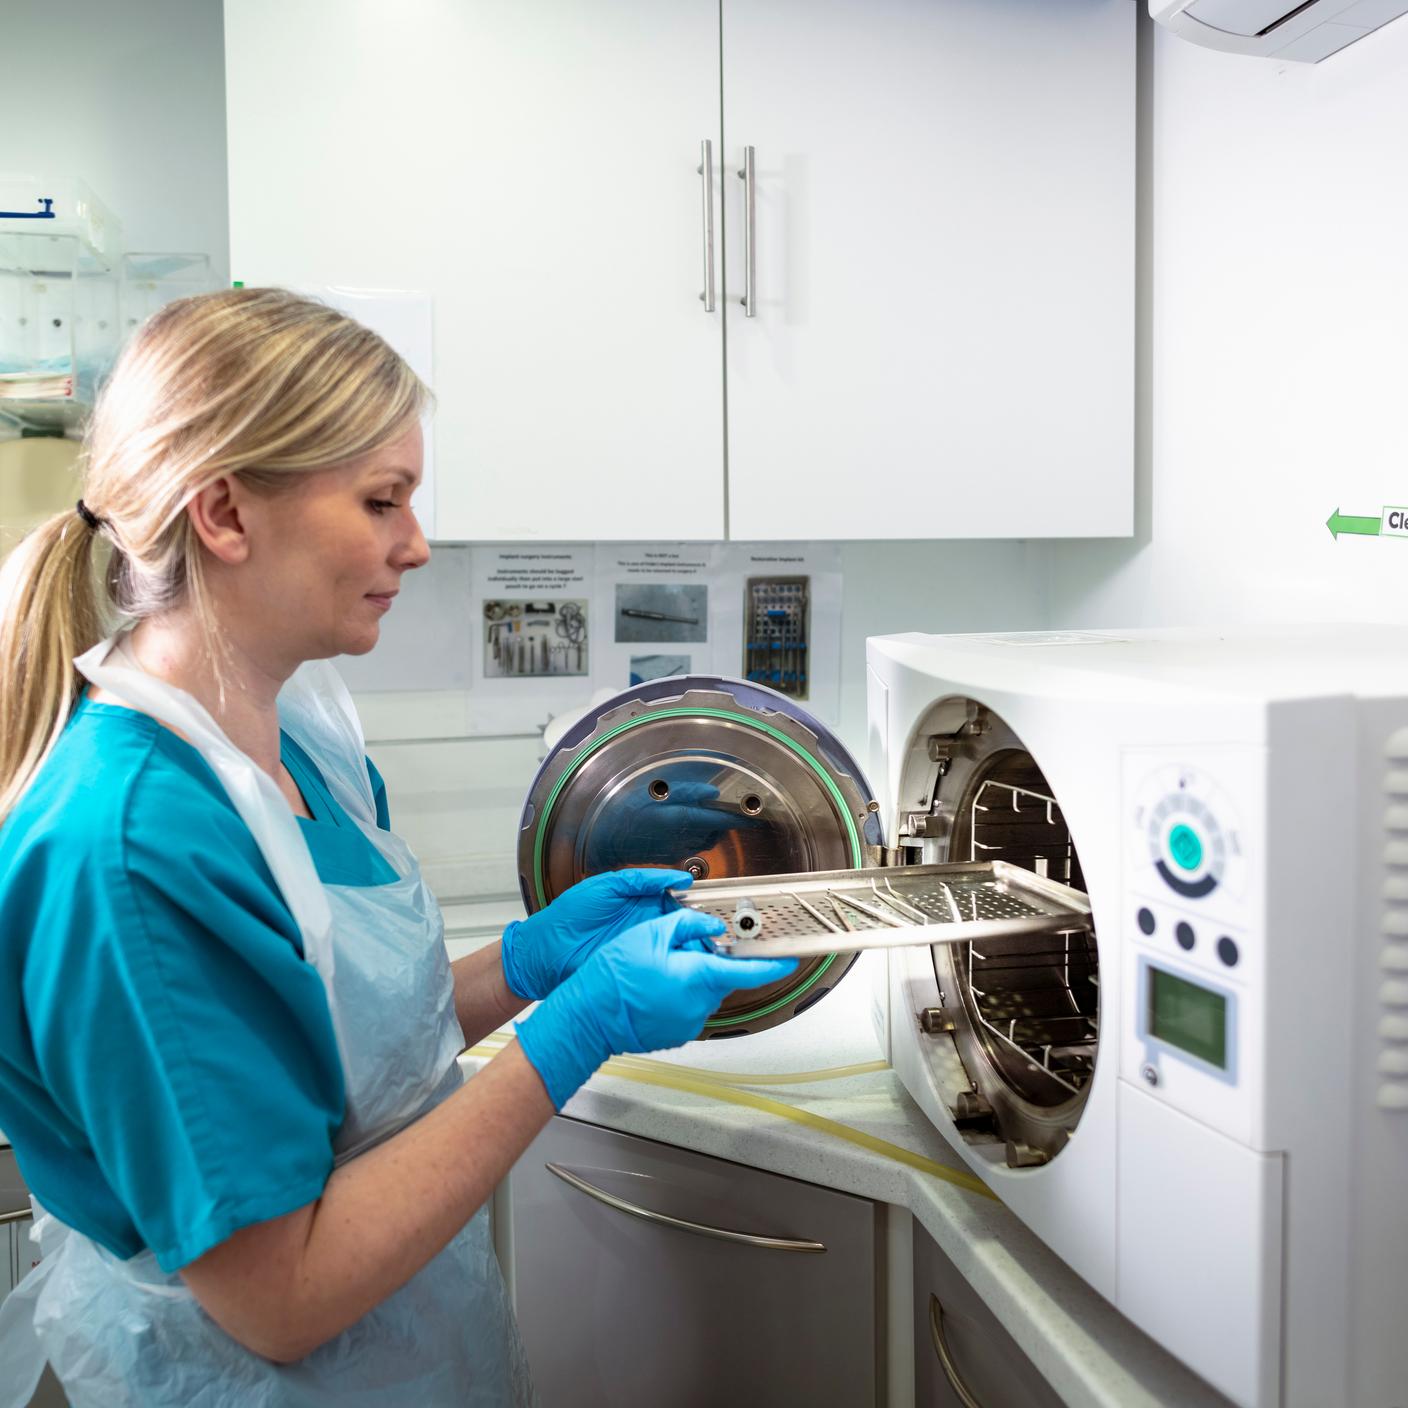 Medical staff sterilizing equipment in a sterilization machine